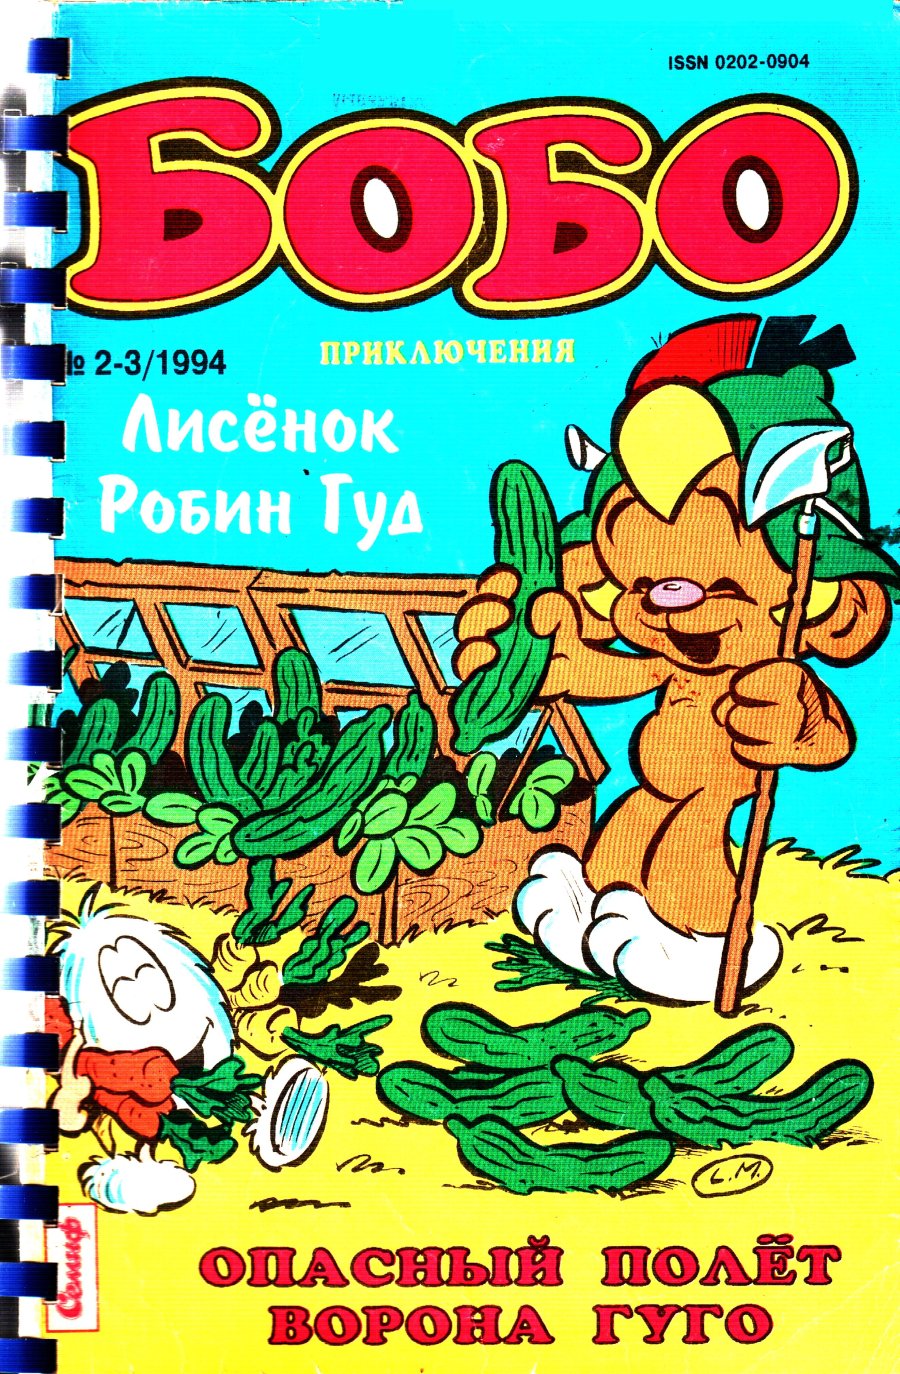 Комикс Бобо #2-3-1994